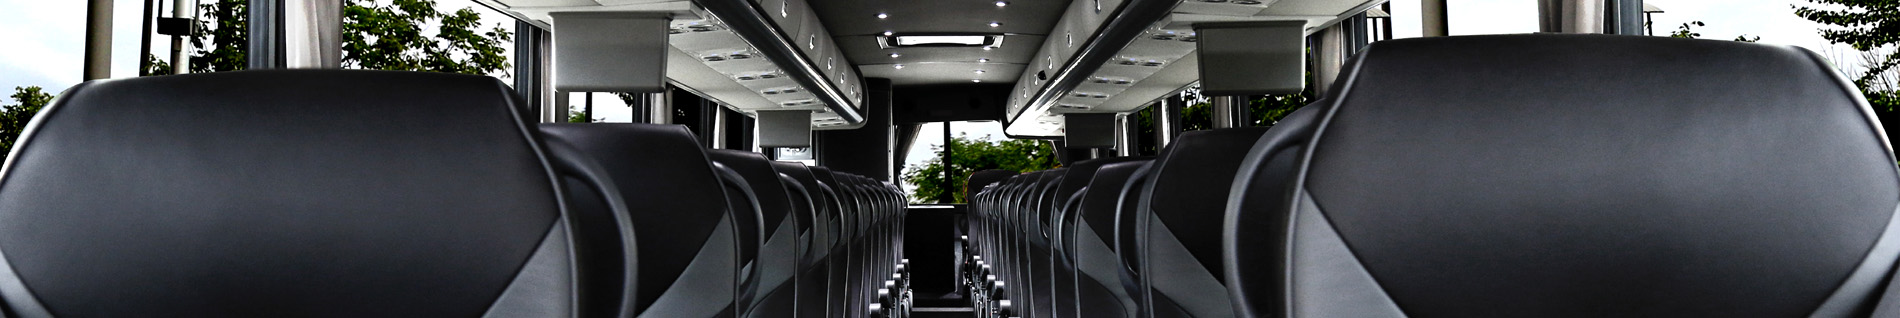 looking for luxury van & bus charter rentals?